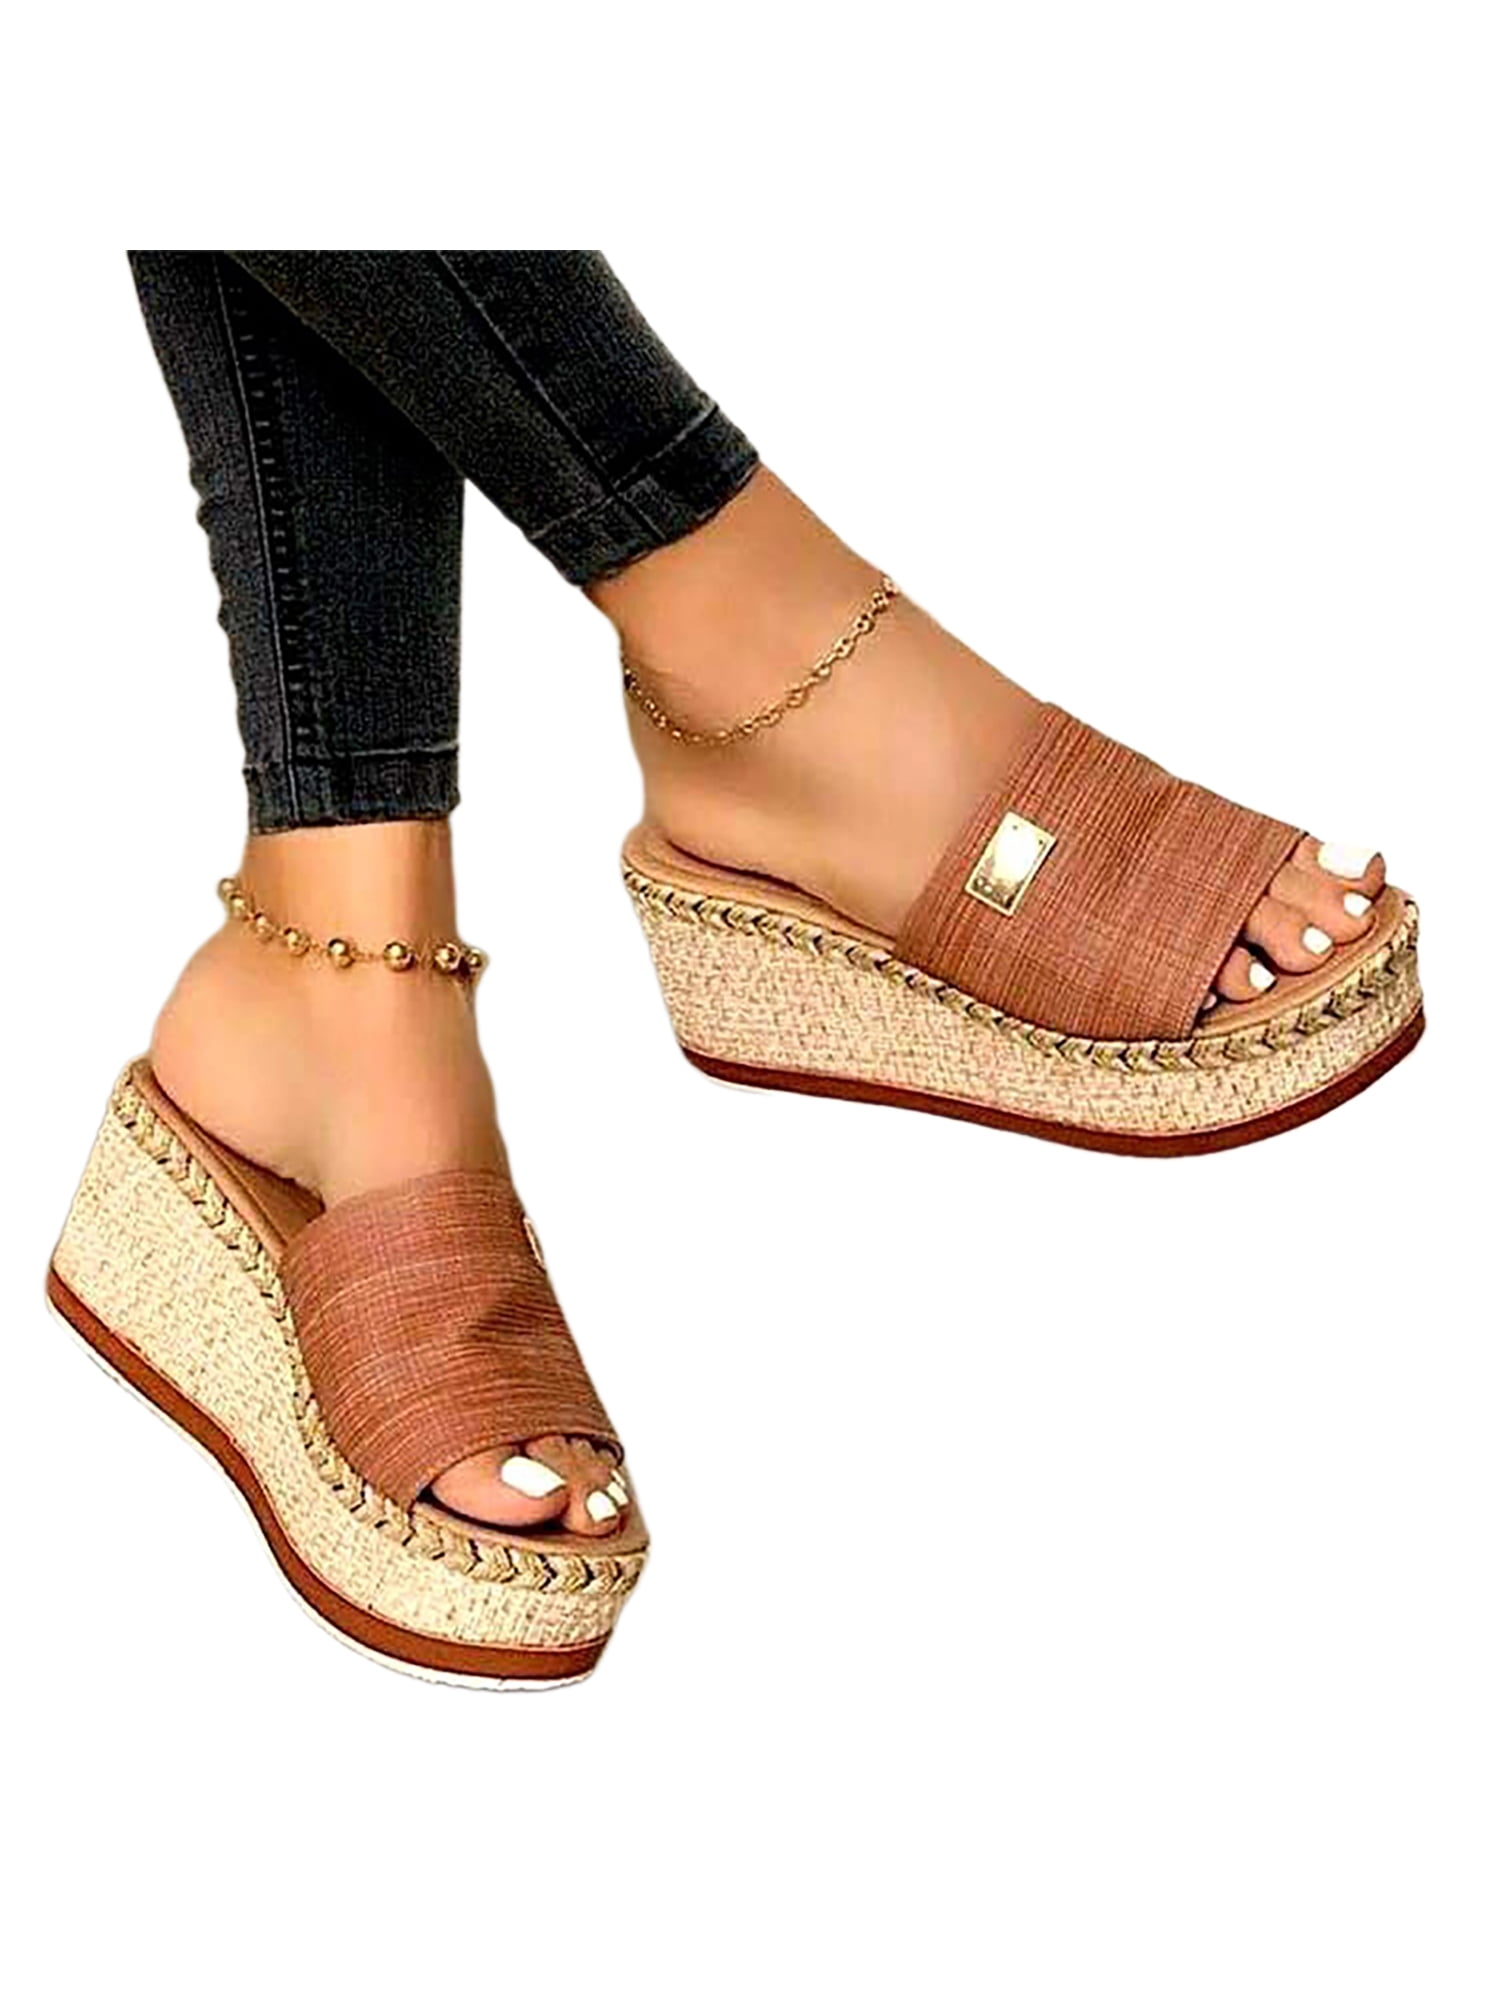 Women's Slip On Flatform Sandals Platform Espadrilles Wedges Summer Shoes Size 